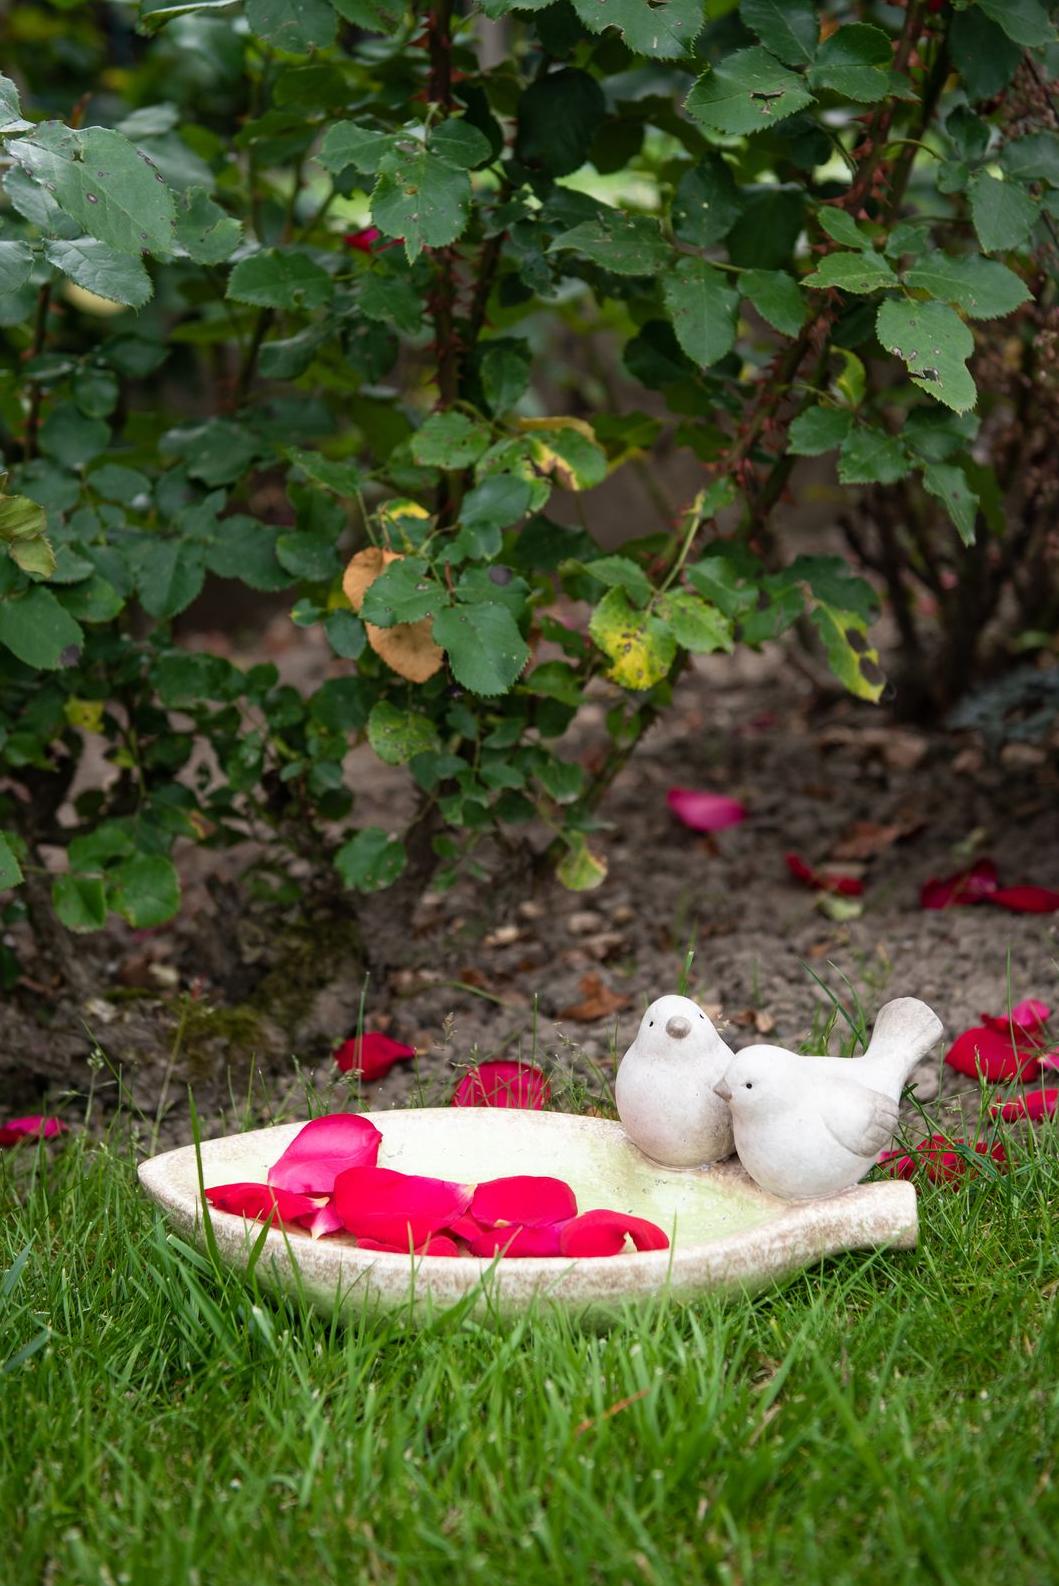 Ceramic birdbath with a pair of birds Garden ID